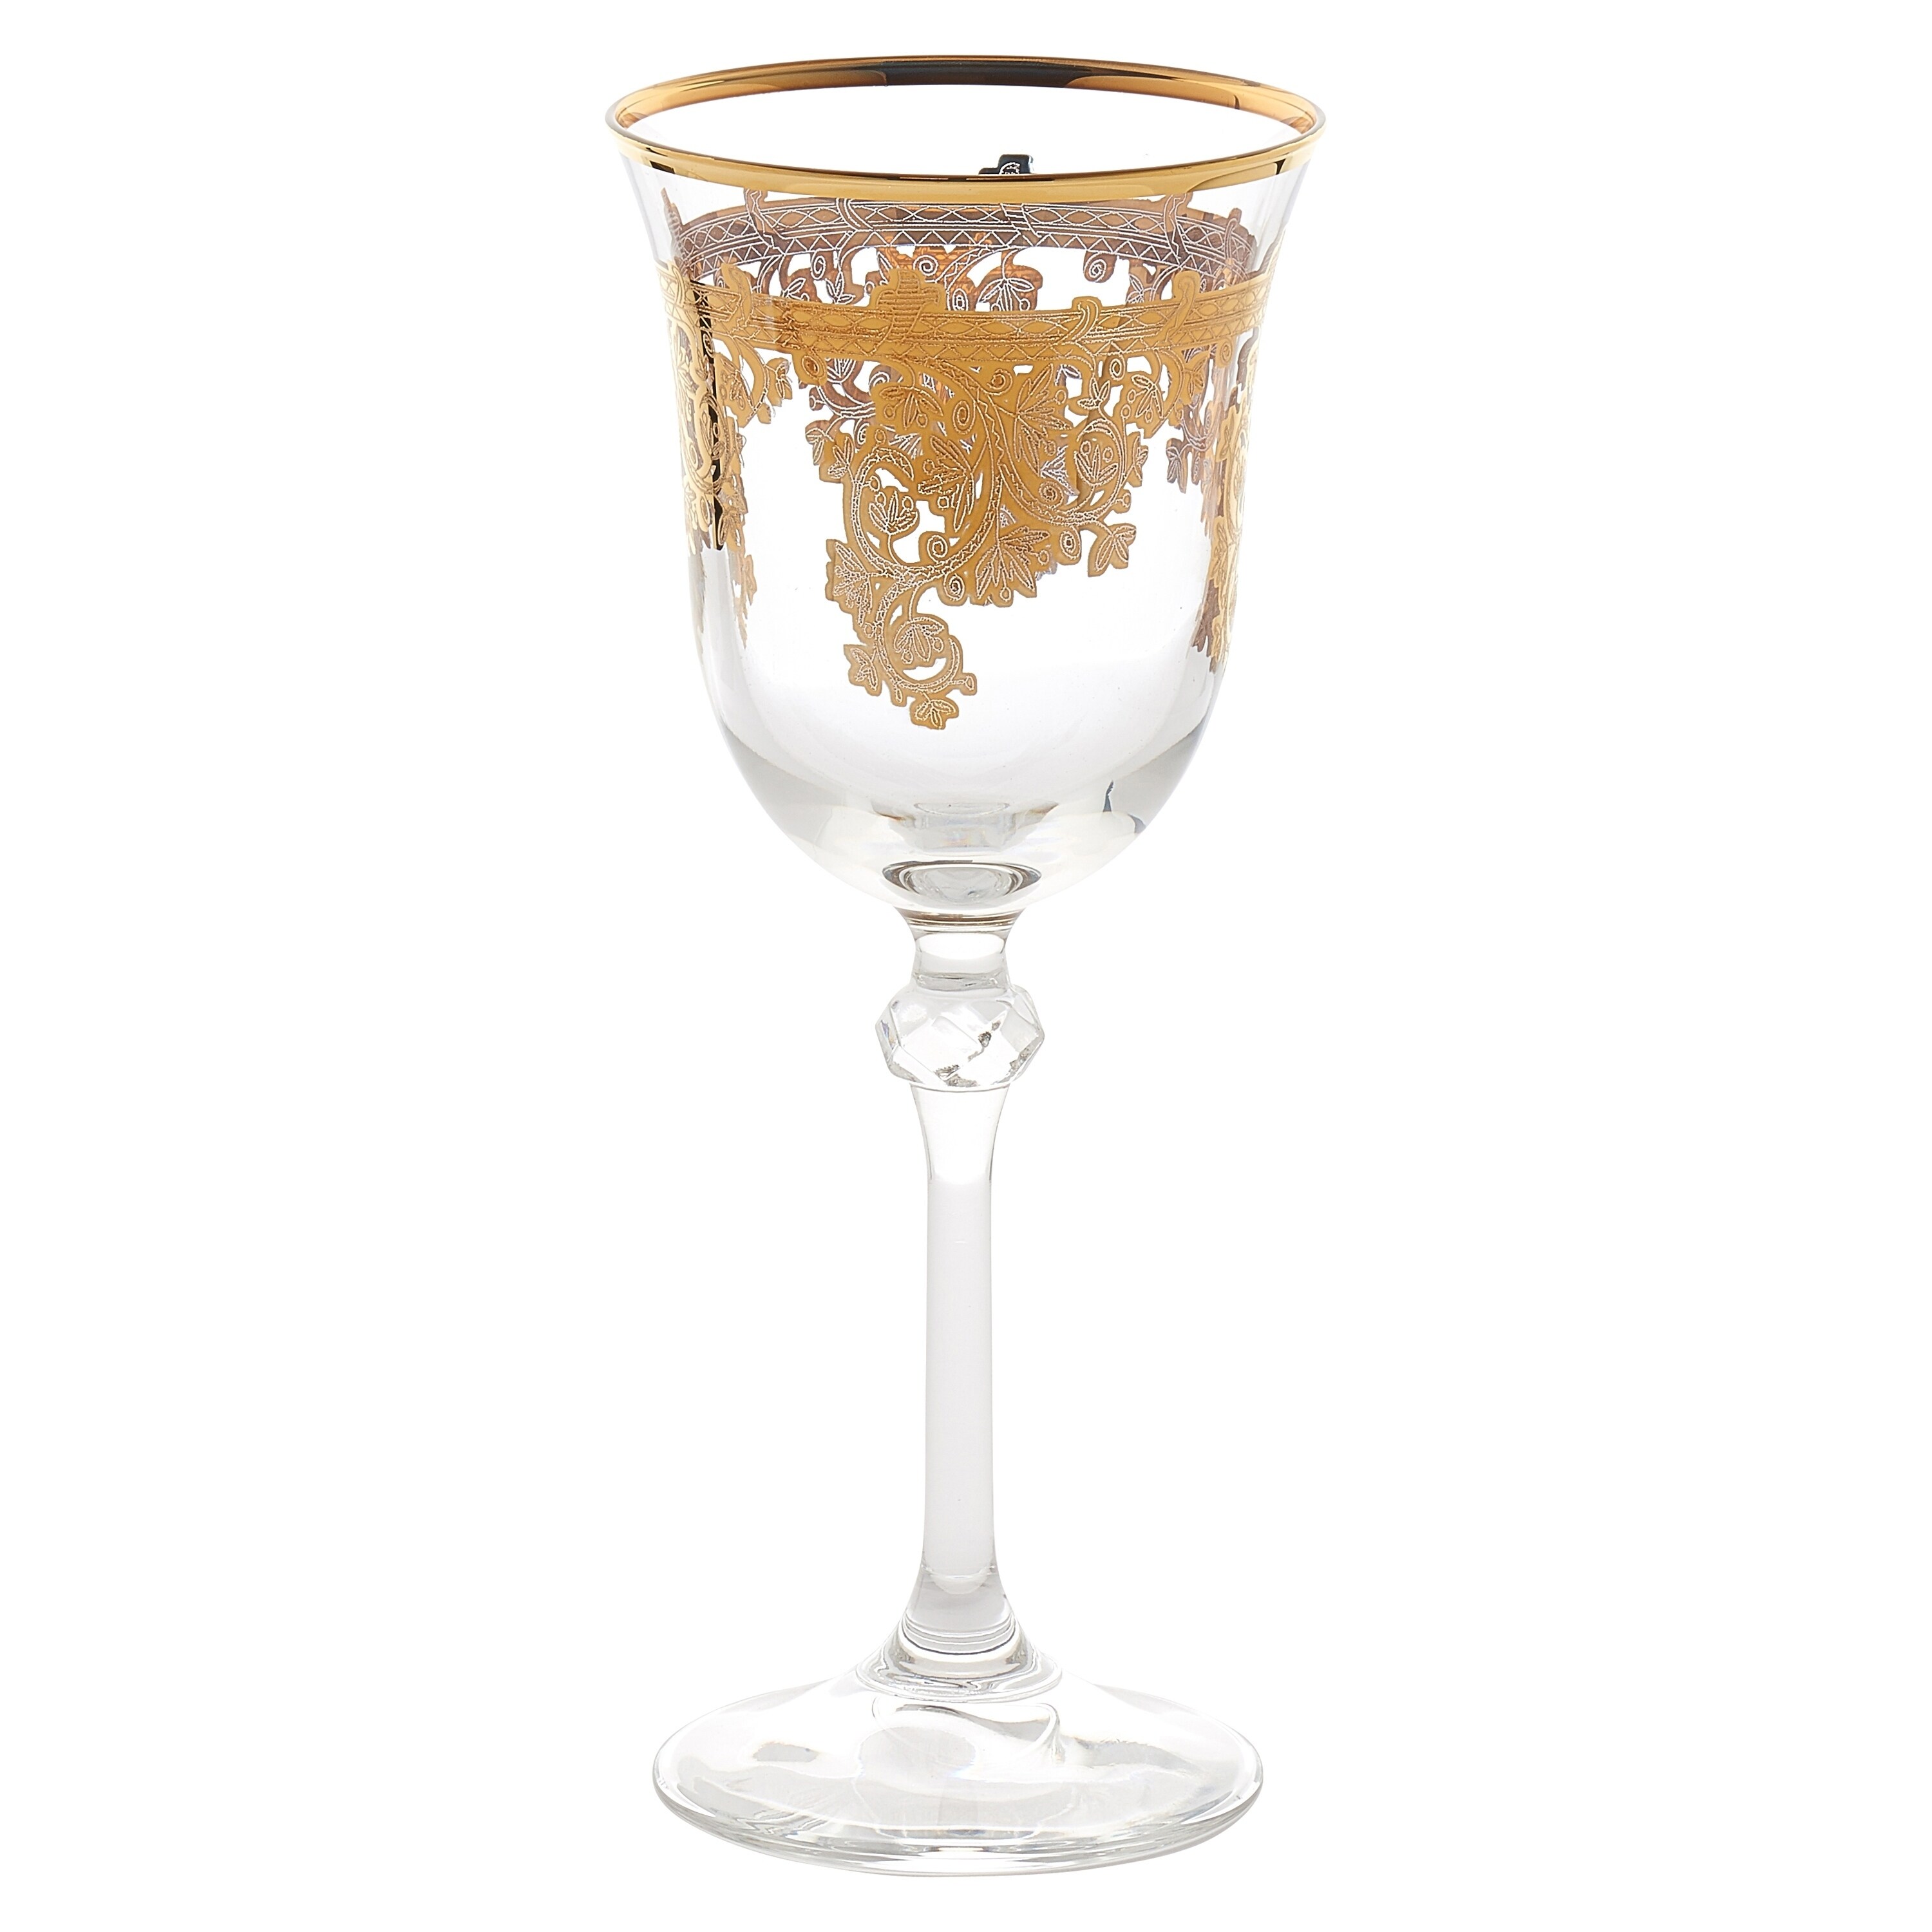 https://ak1.ostkcdn.com/images/products/18250680/Set-of-6-Embellished-24K-Gold-Crystal-White-Wine-Goblets-Made-In-Italy-12edabfc-d95e-4bec-baff-9ab9af7f2d00.jpg